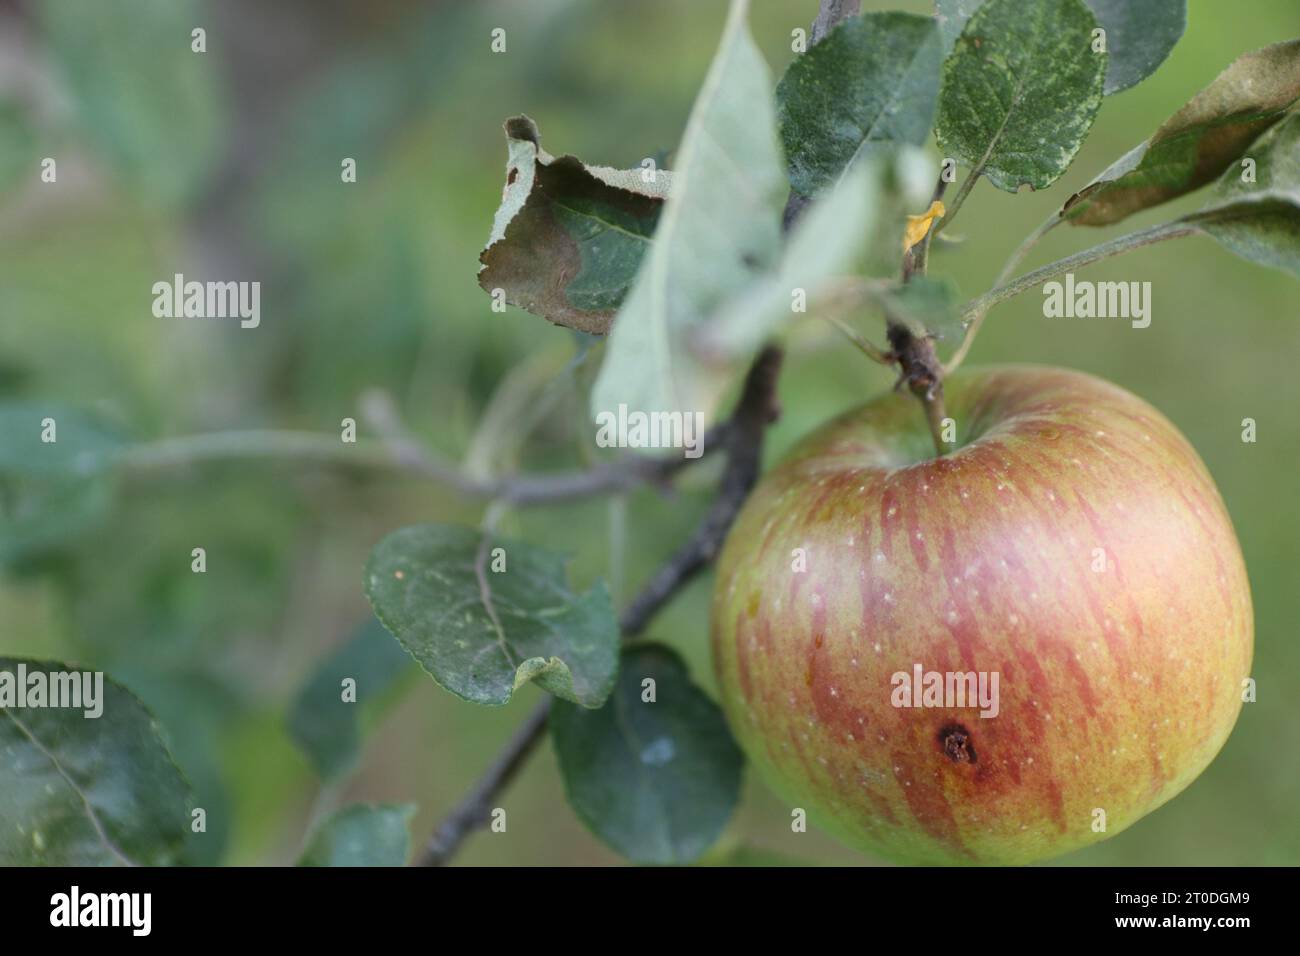 Un'unica mela macintosh matura è appesa a un vivace ramo a foglia dalle tinte autunnali, la sua pelle color rosso intenso risplende al sole e invita gli spettatori a prendere in considerazione Foto Stock